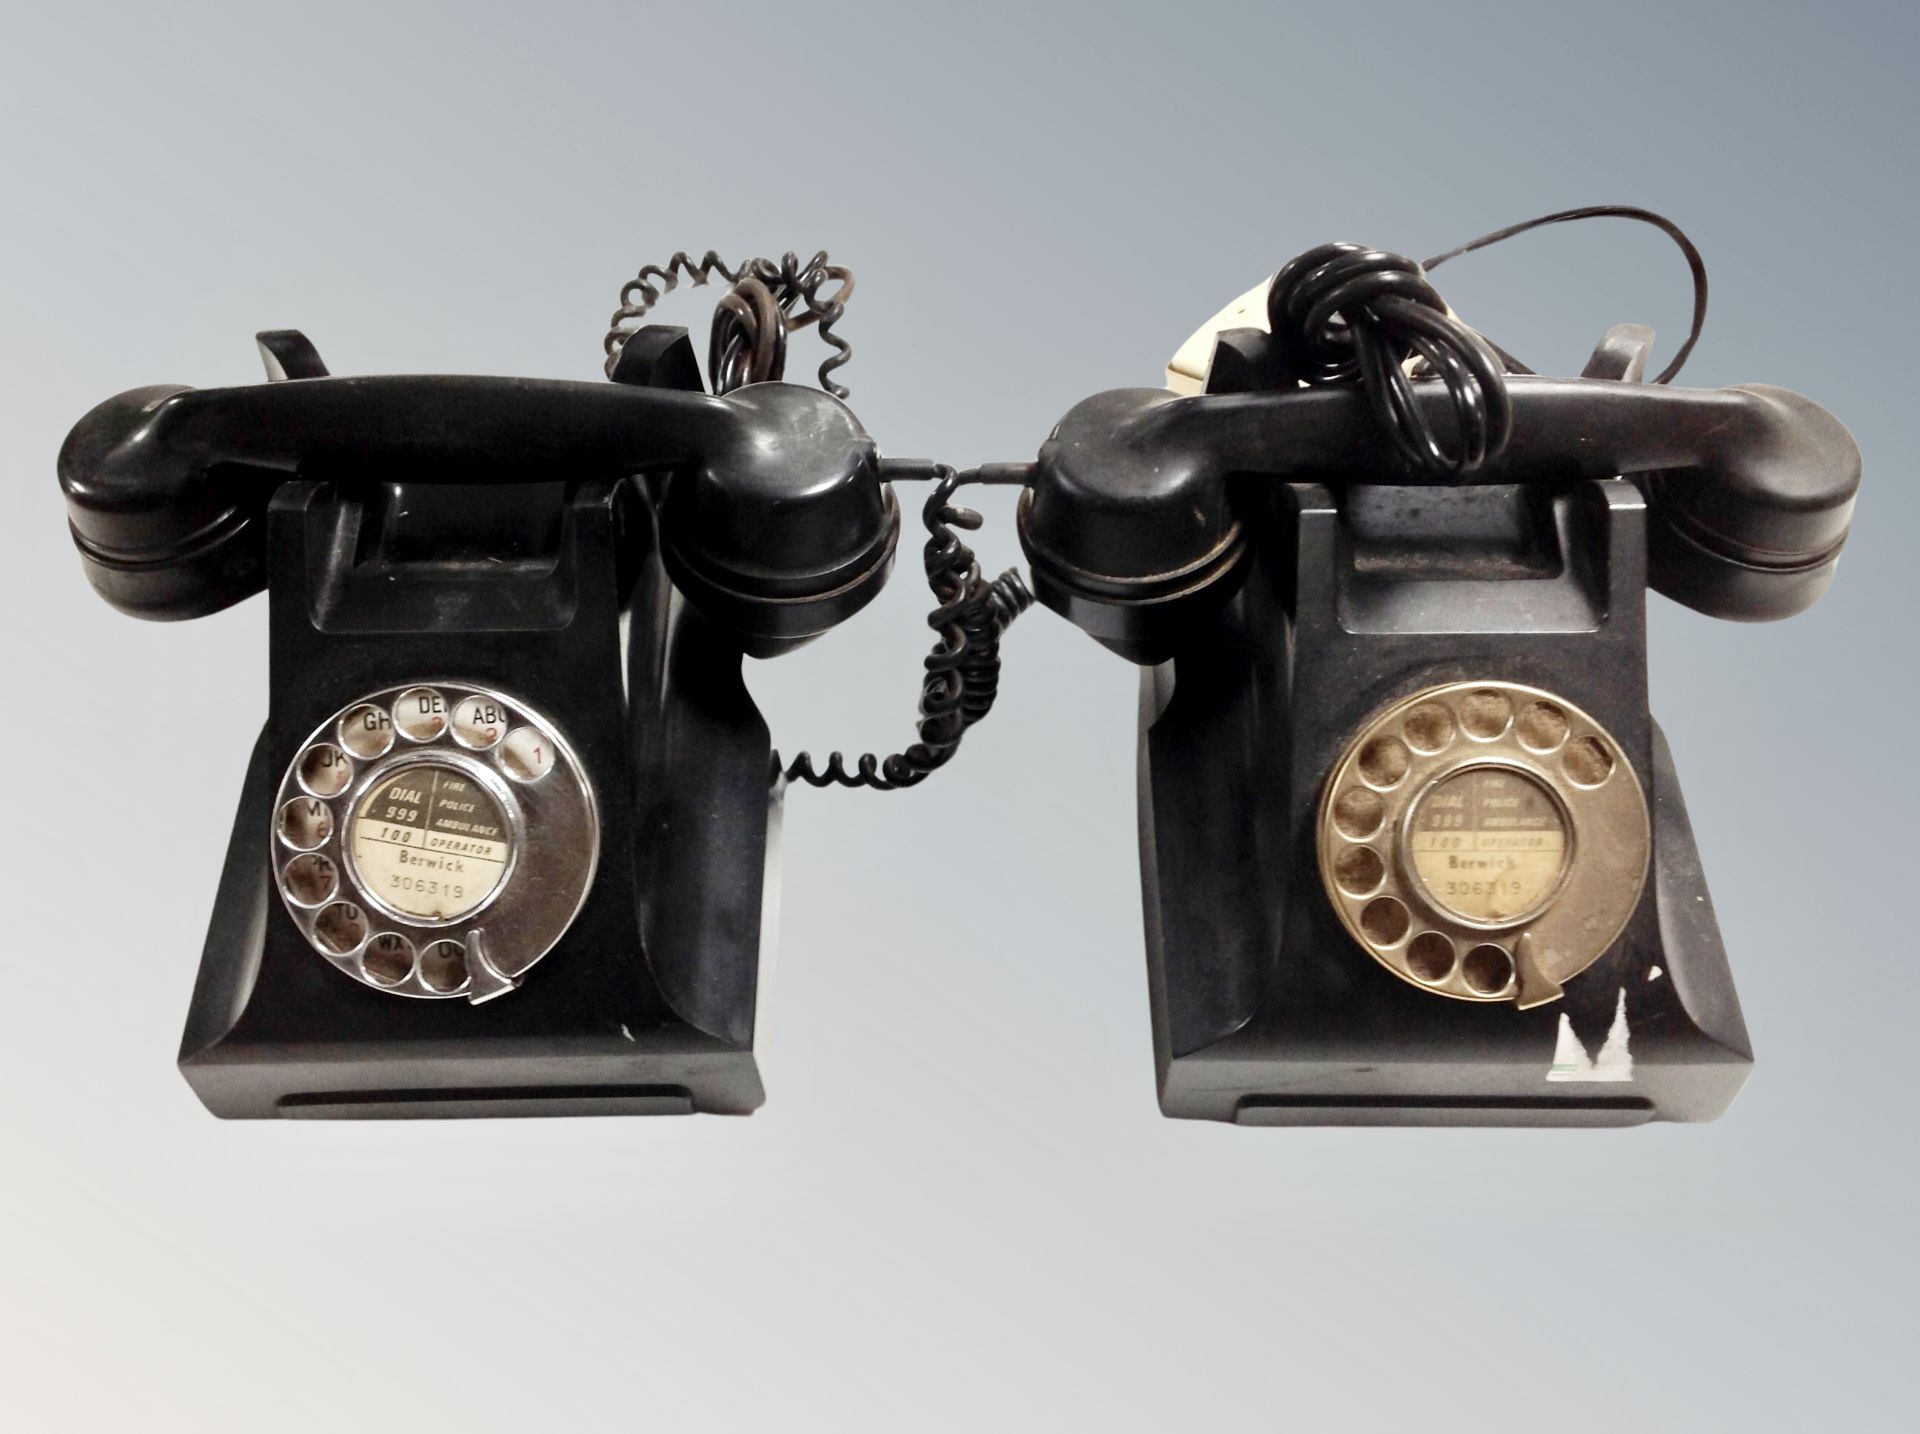 Two vintage black Bakelite rotary telephones